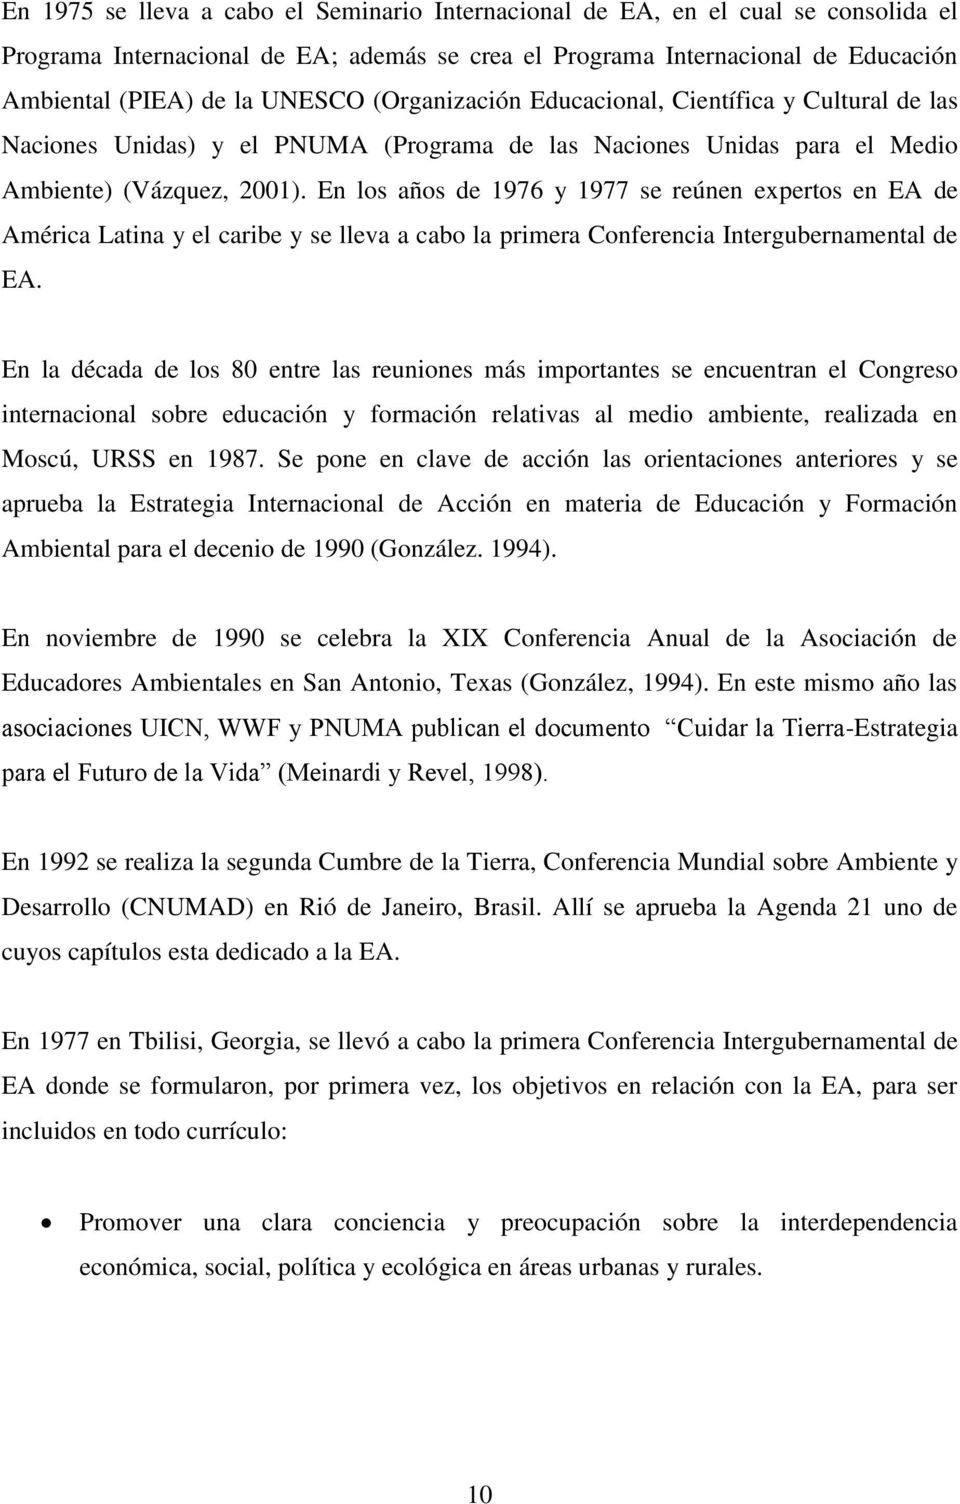 En los años de 1976 y 1977 se reúnen expertos en EA de América Latina y el caribe y se lleva a cabo la primera Conferencia Intergubernamental de EA.